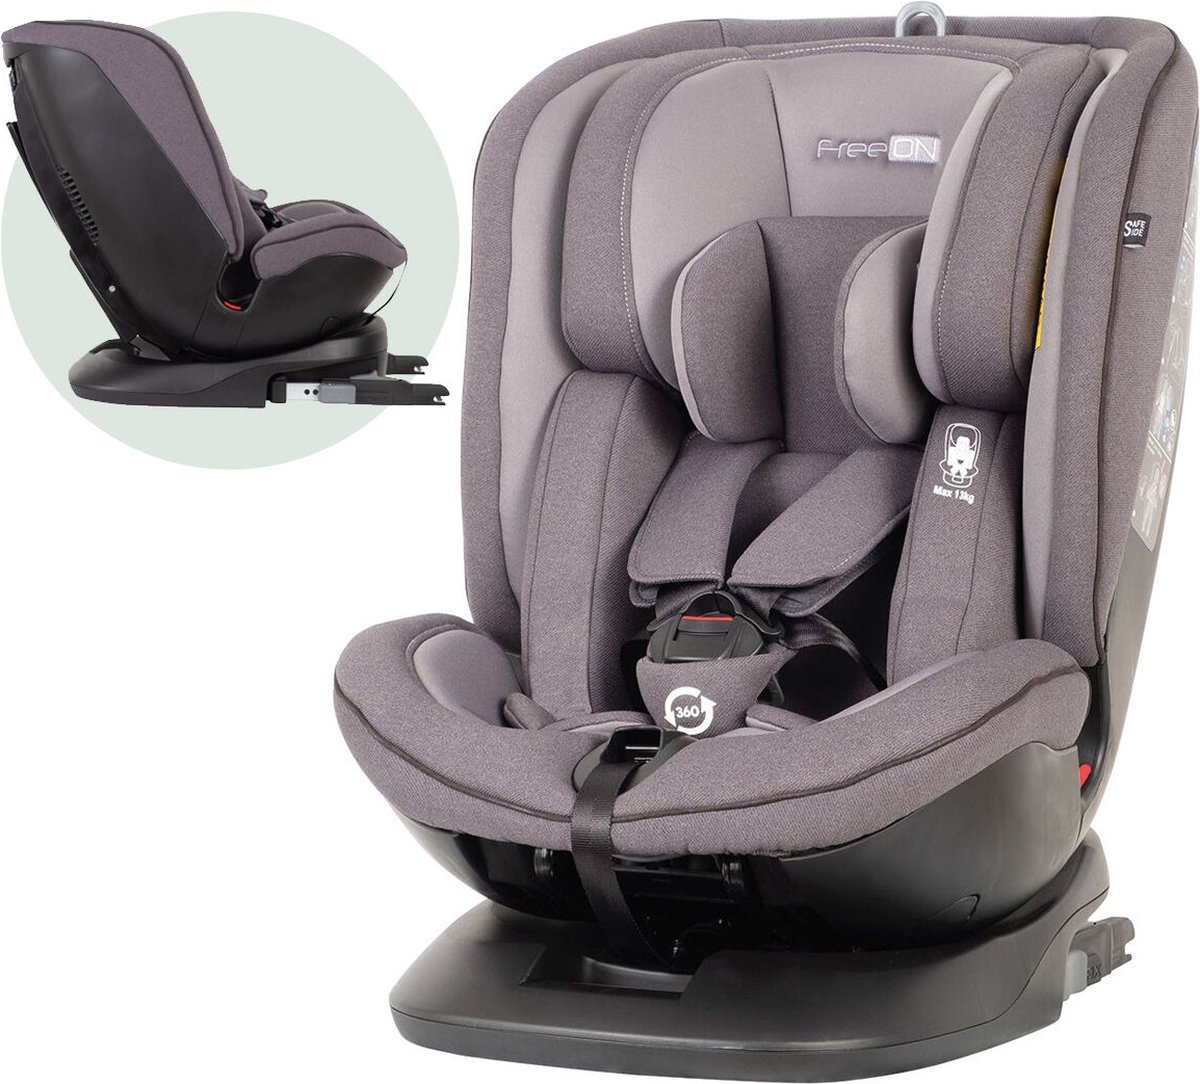 FreeON autostoel Atlas 360° met isoFix Donkergrijs (0-36kg) - Groep 0-1-2-3 autostoel voor kinderen van 0 tot 12 jaar